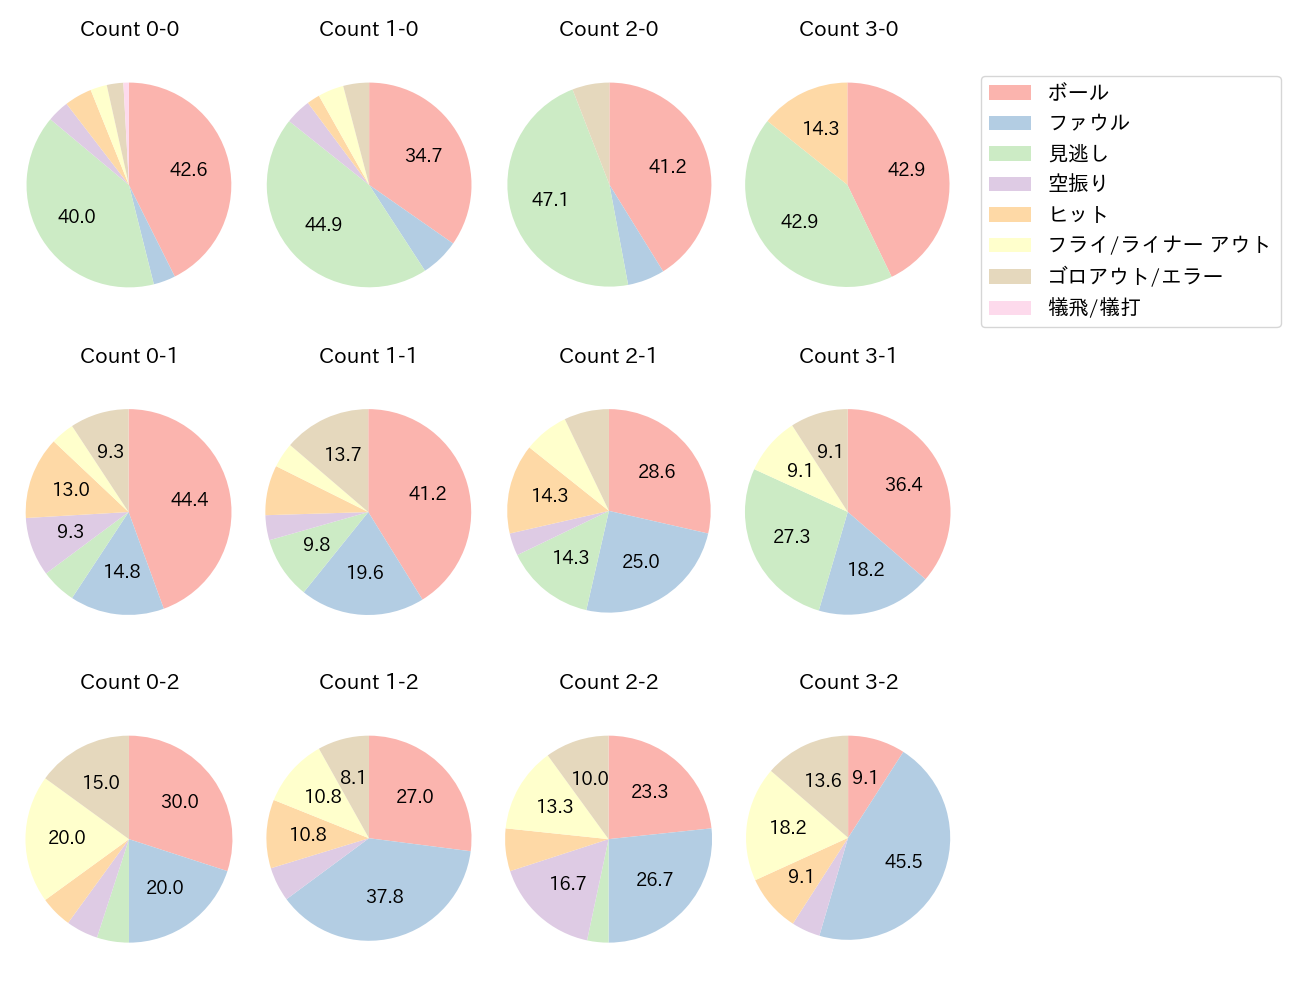 岡林 勇希の球数分布(2022年9月)